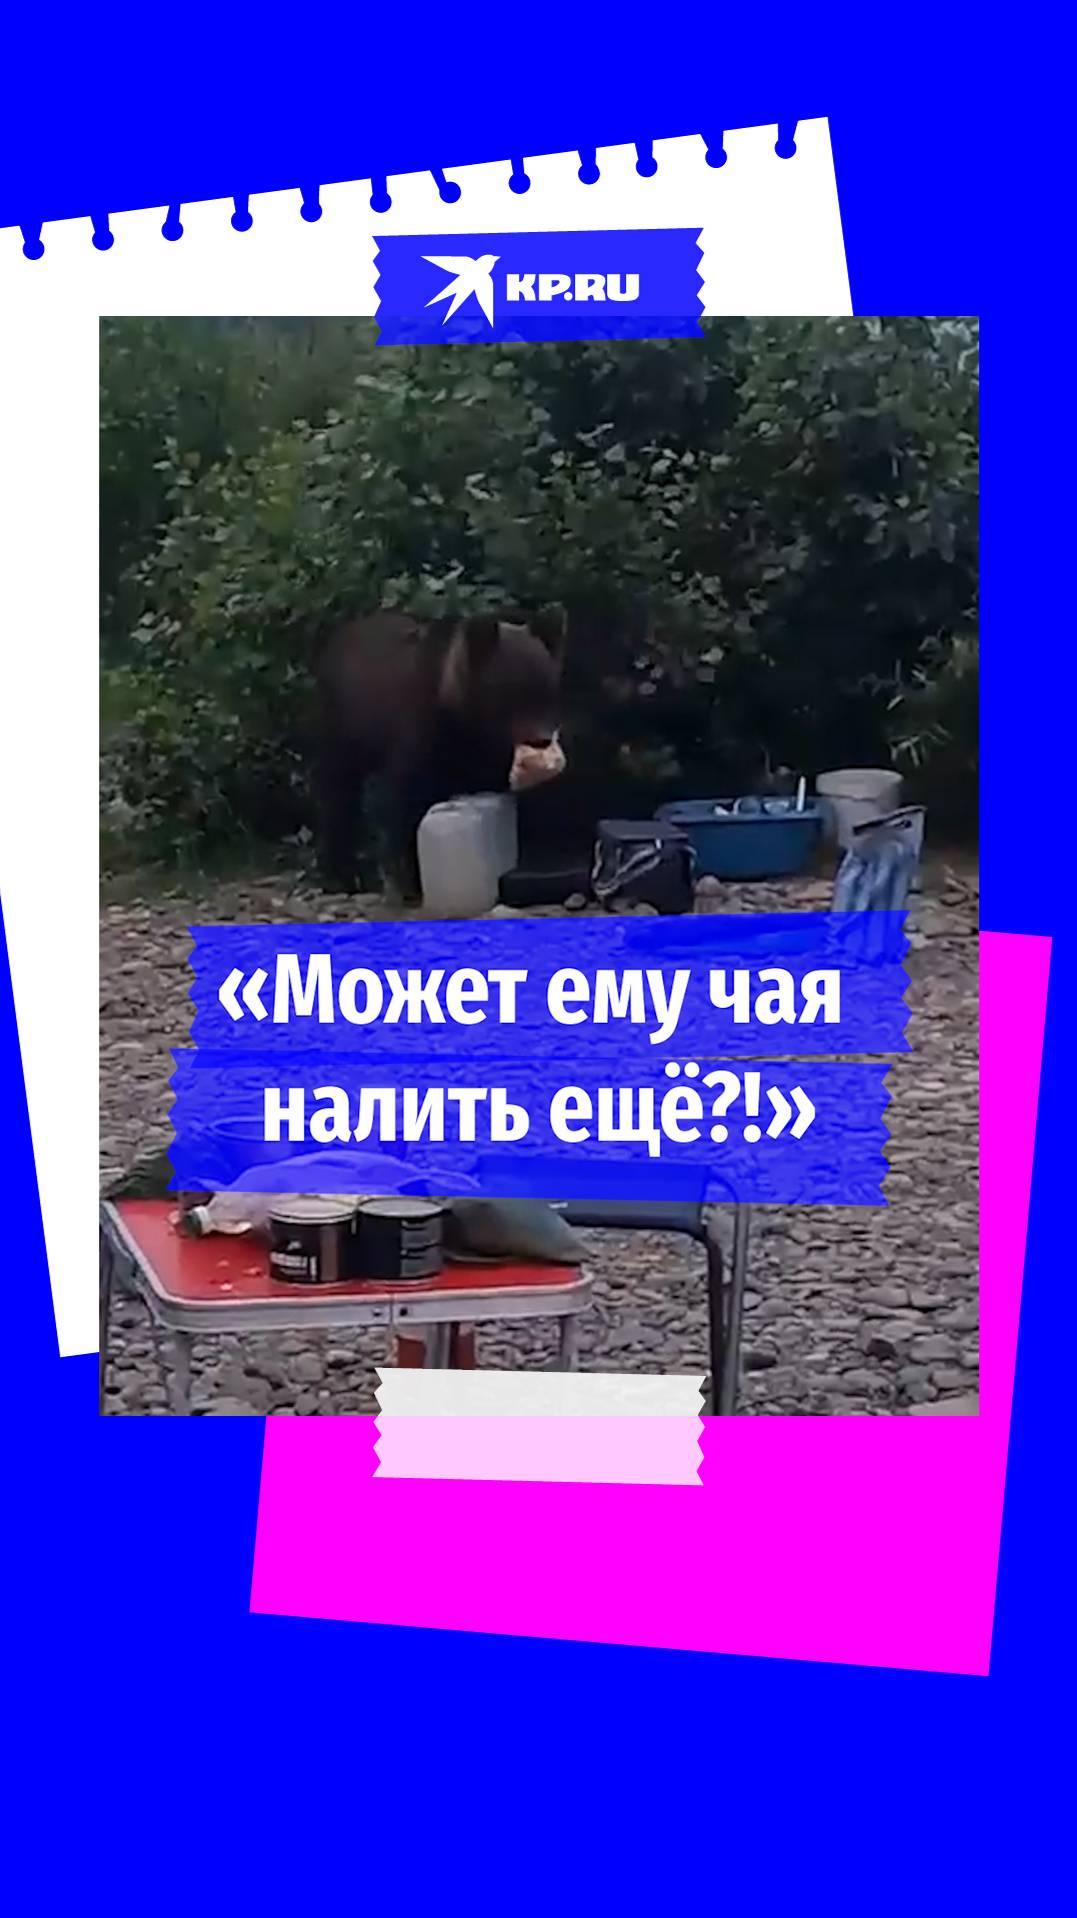 Медведь стащил печенье у рыбаков на берегу реки в Кемеровской области